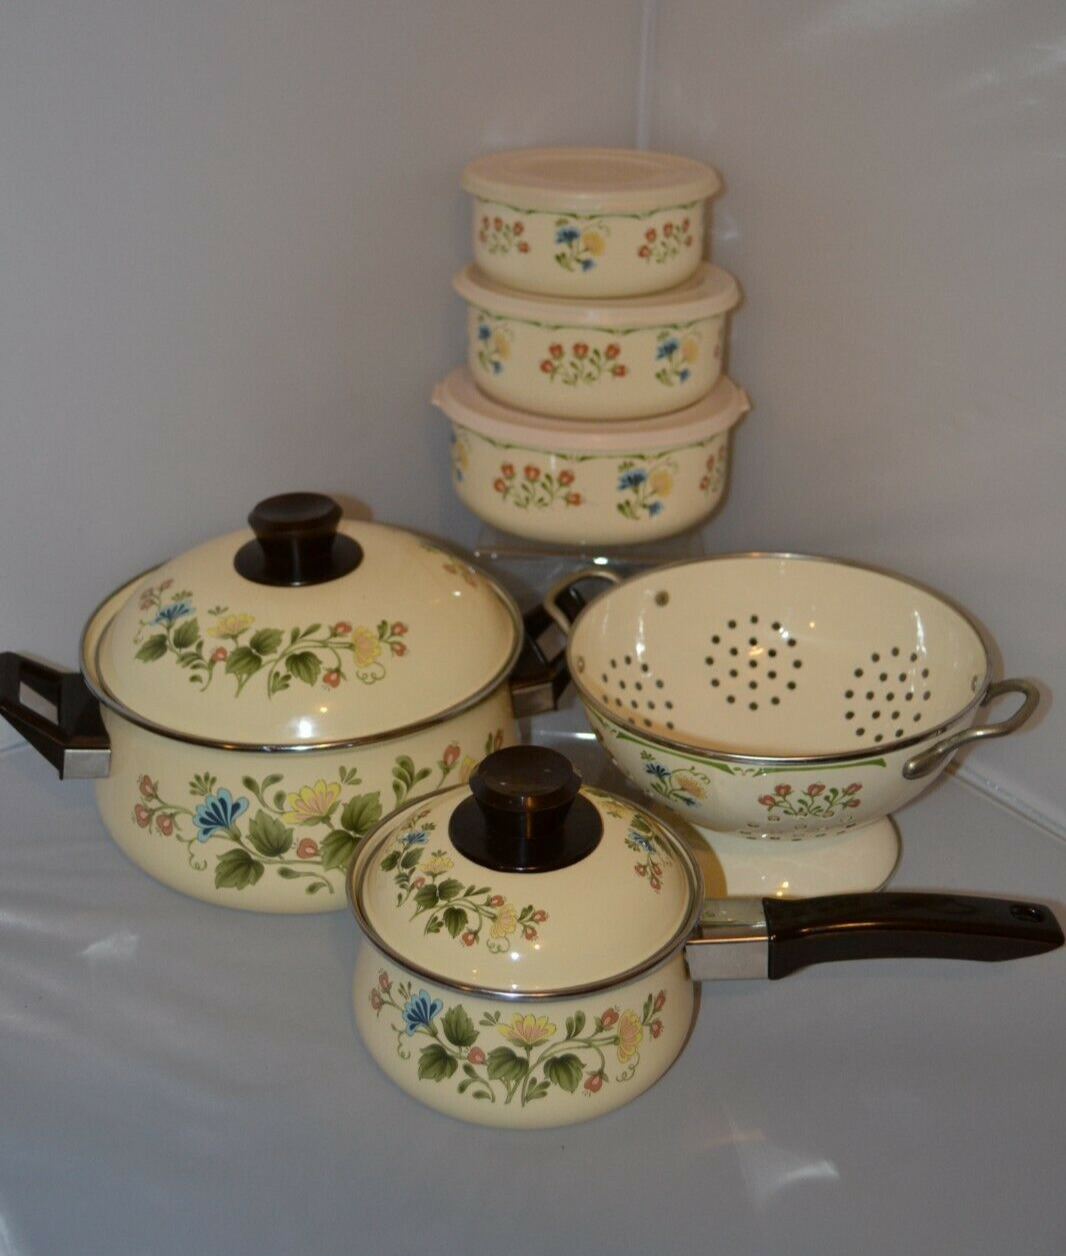 Vintage Kobe JC Penney Enamel Coated Floral Design Cookware Set (11 Piece Set)